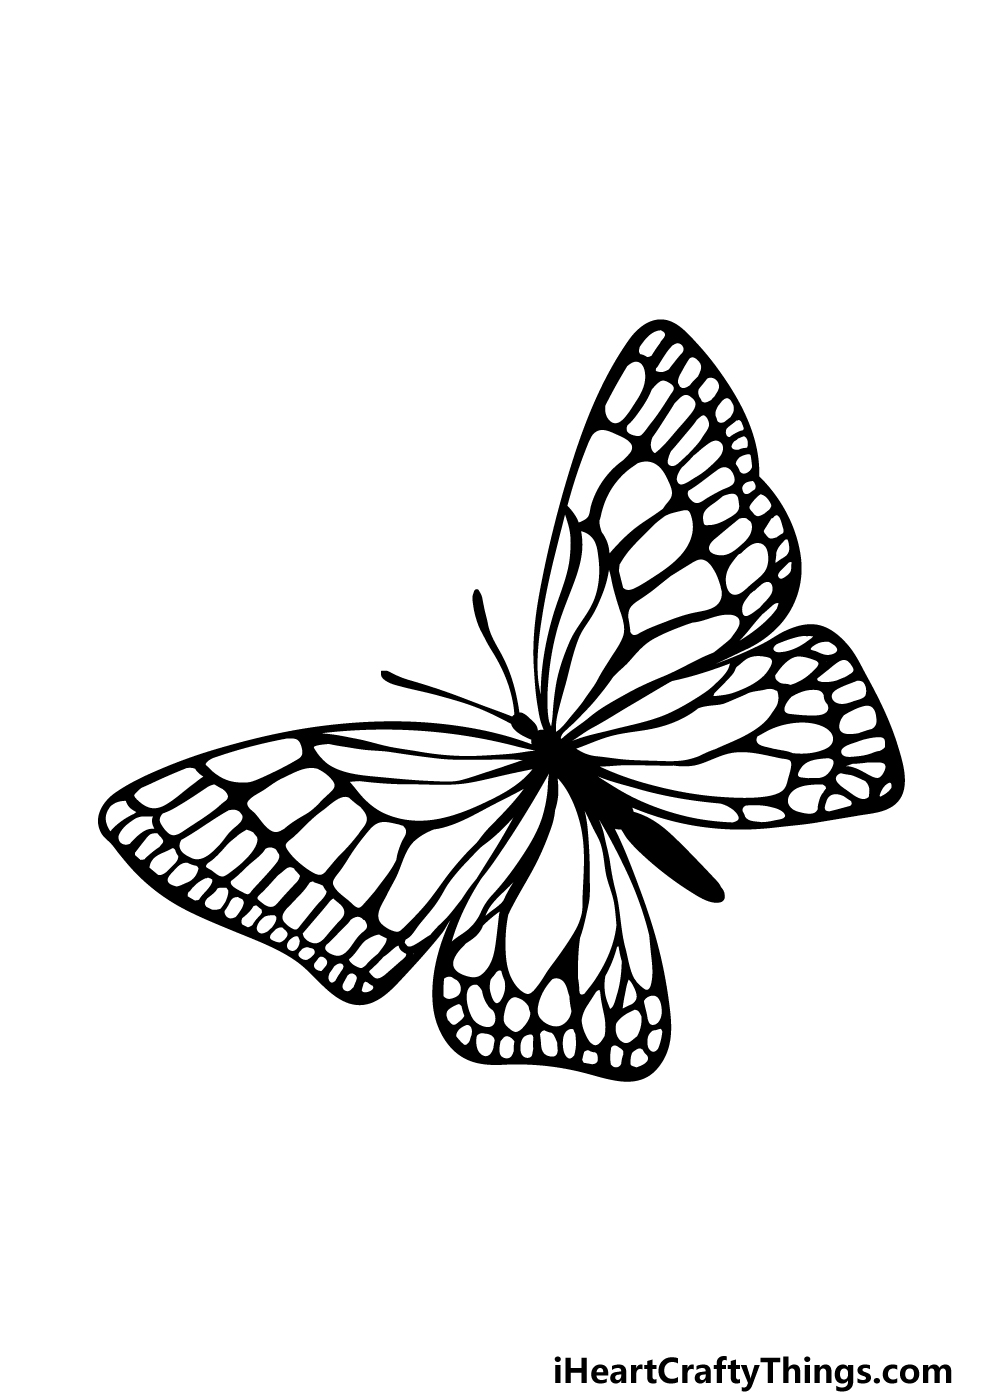 Gambar Kupu-kupu Yang Mudah untuk Ditirukan